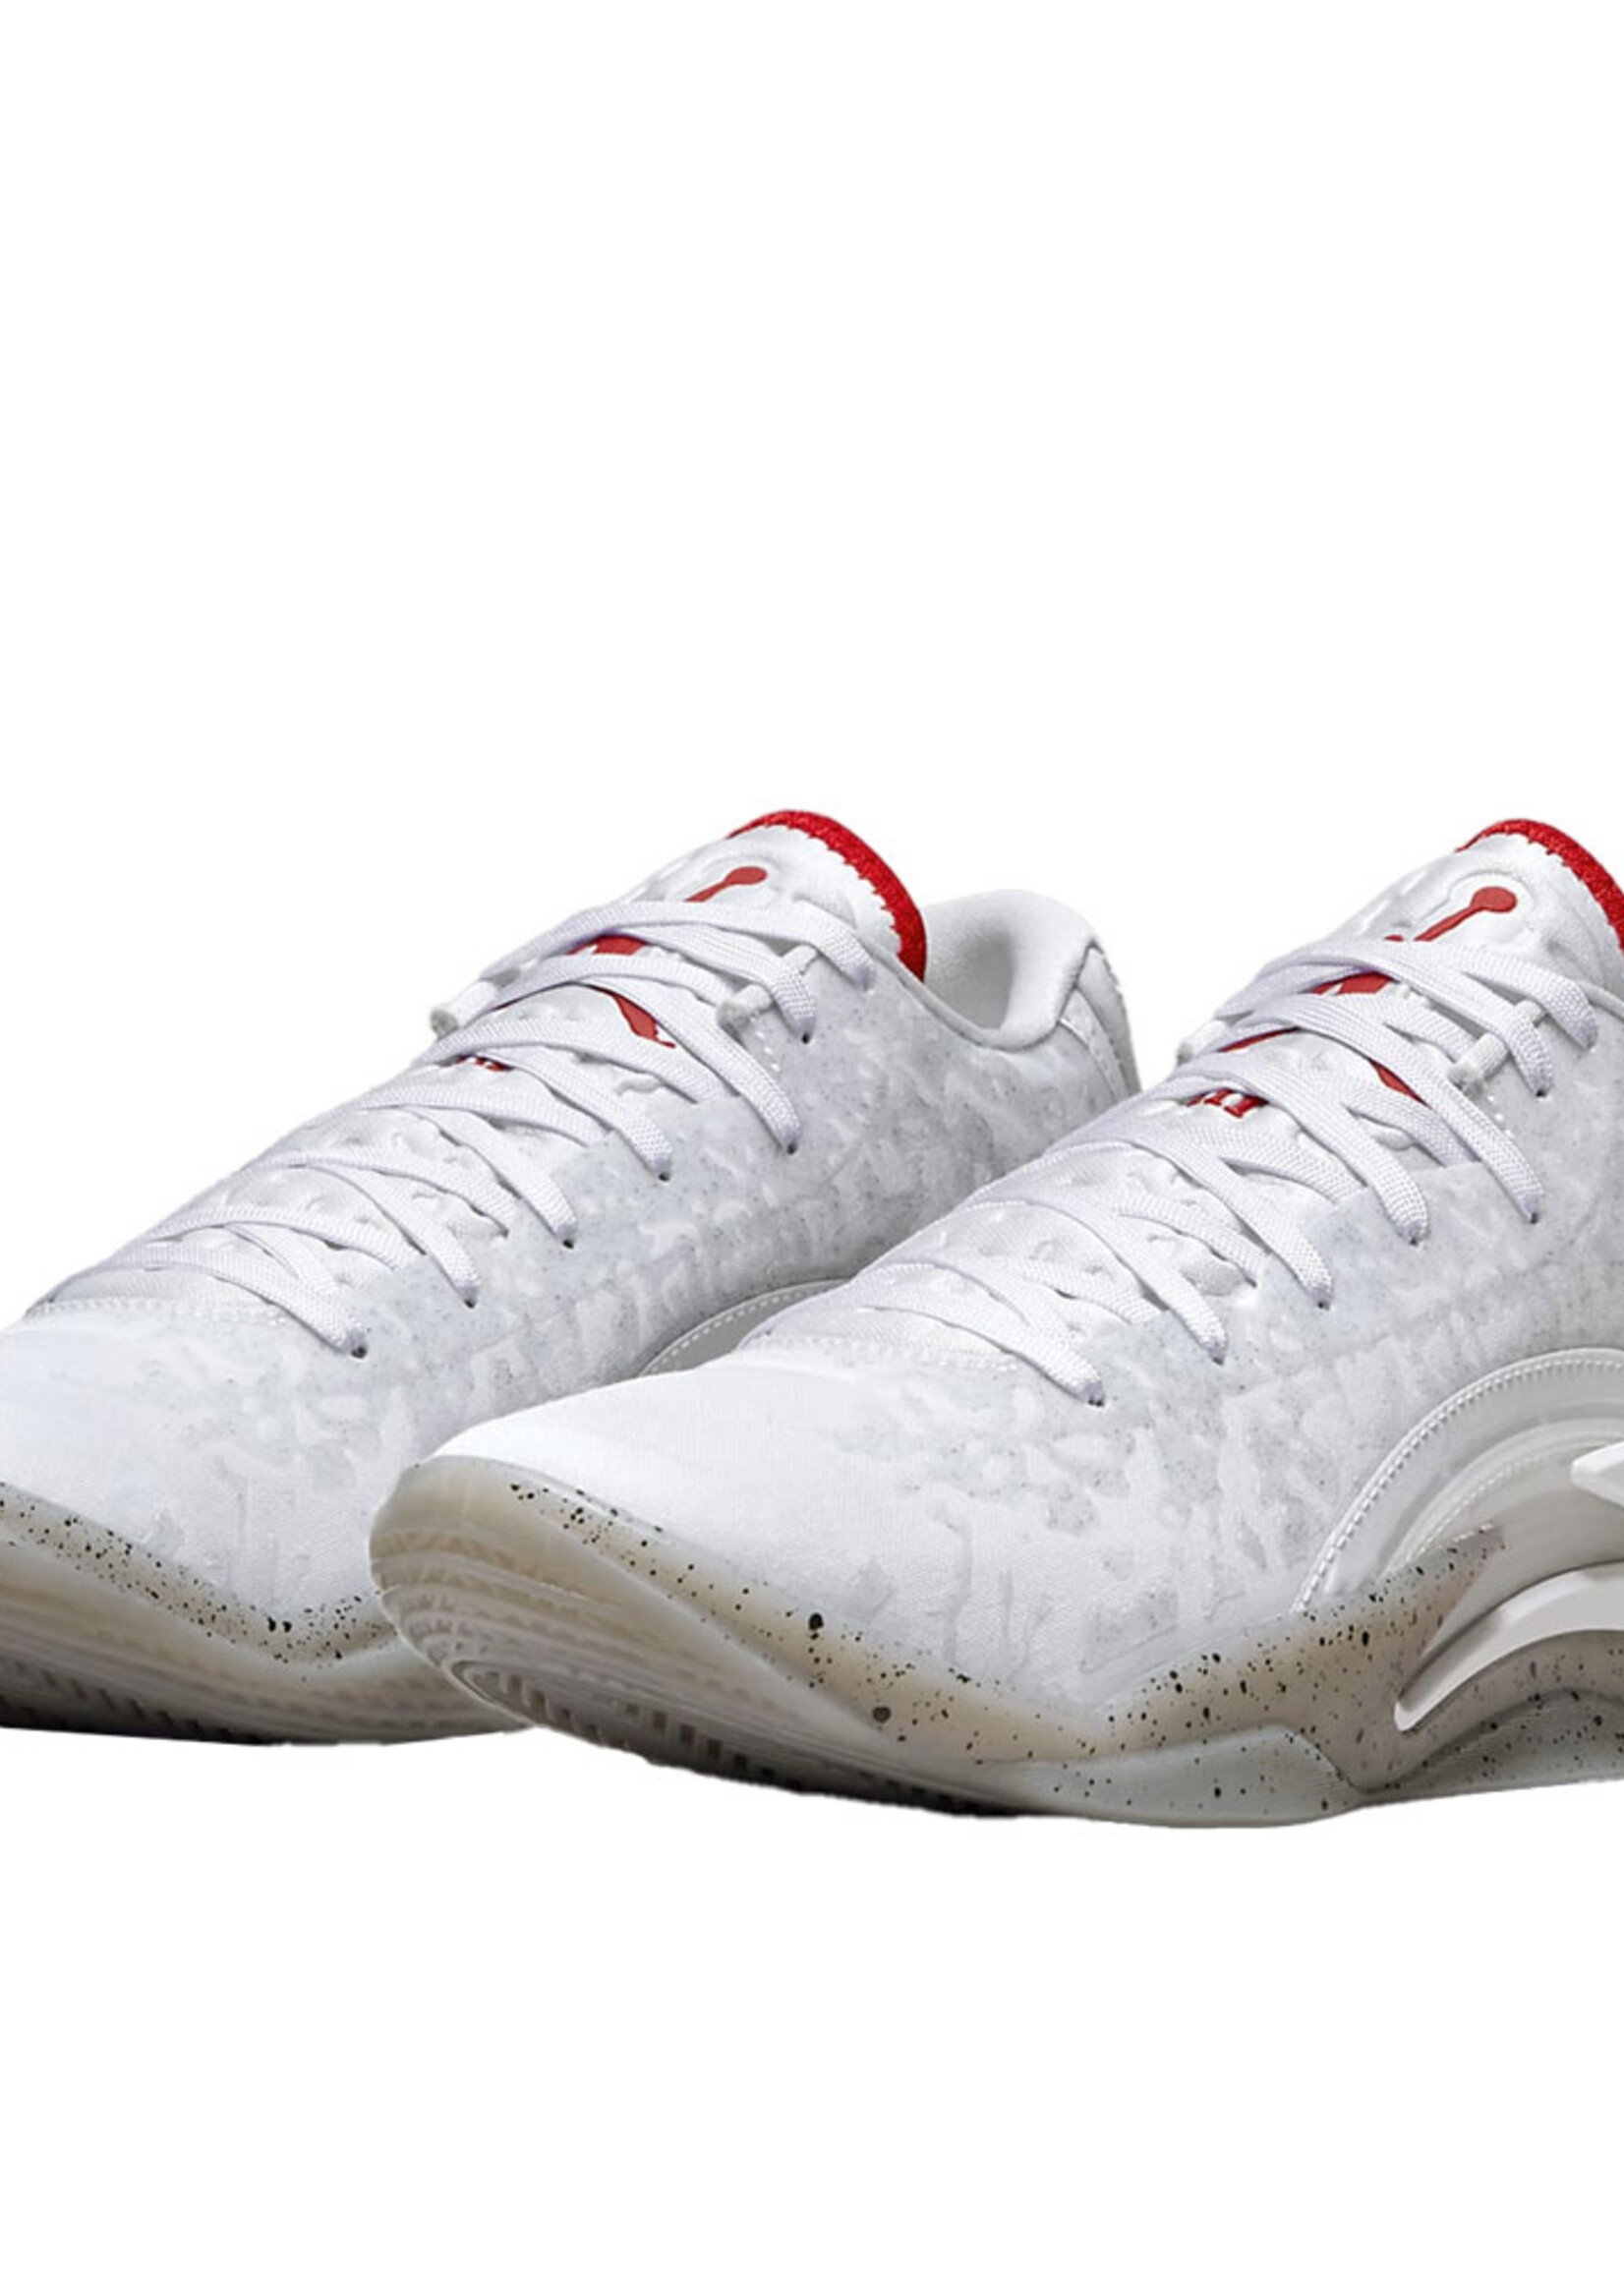 Nike Jordan Zion 3 White red (GS)